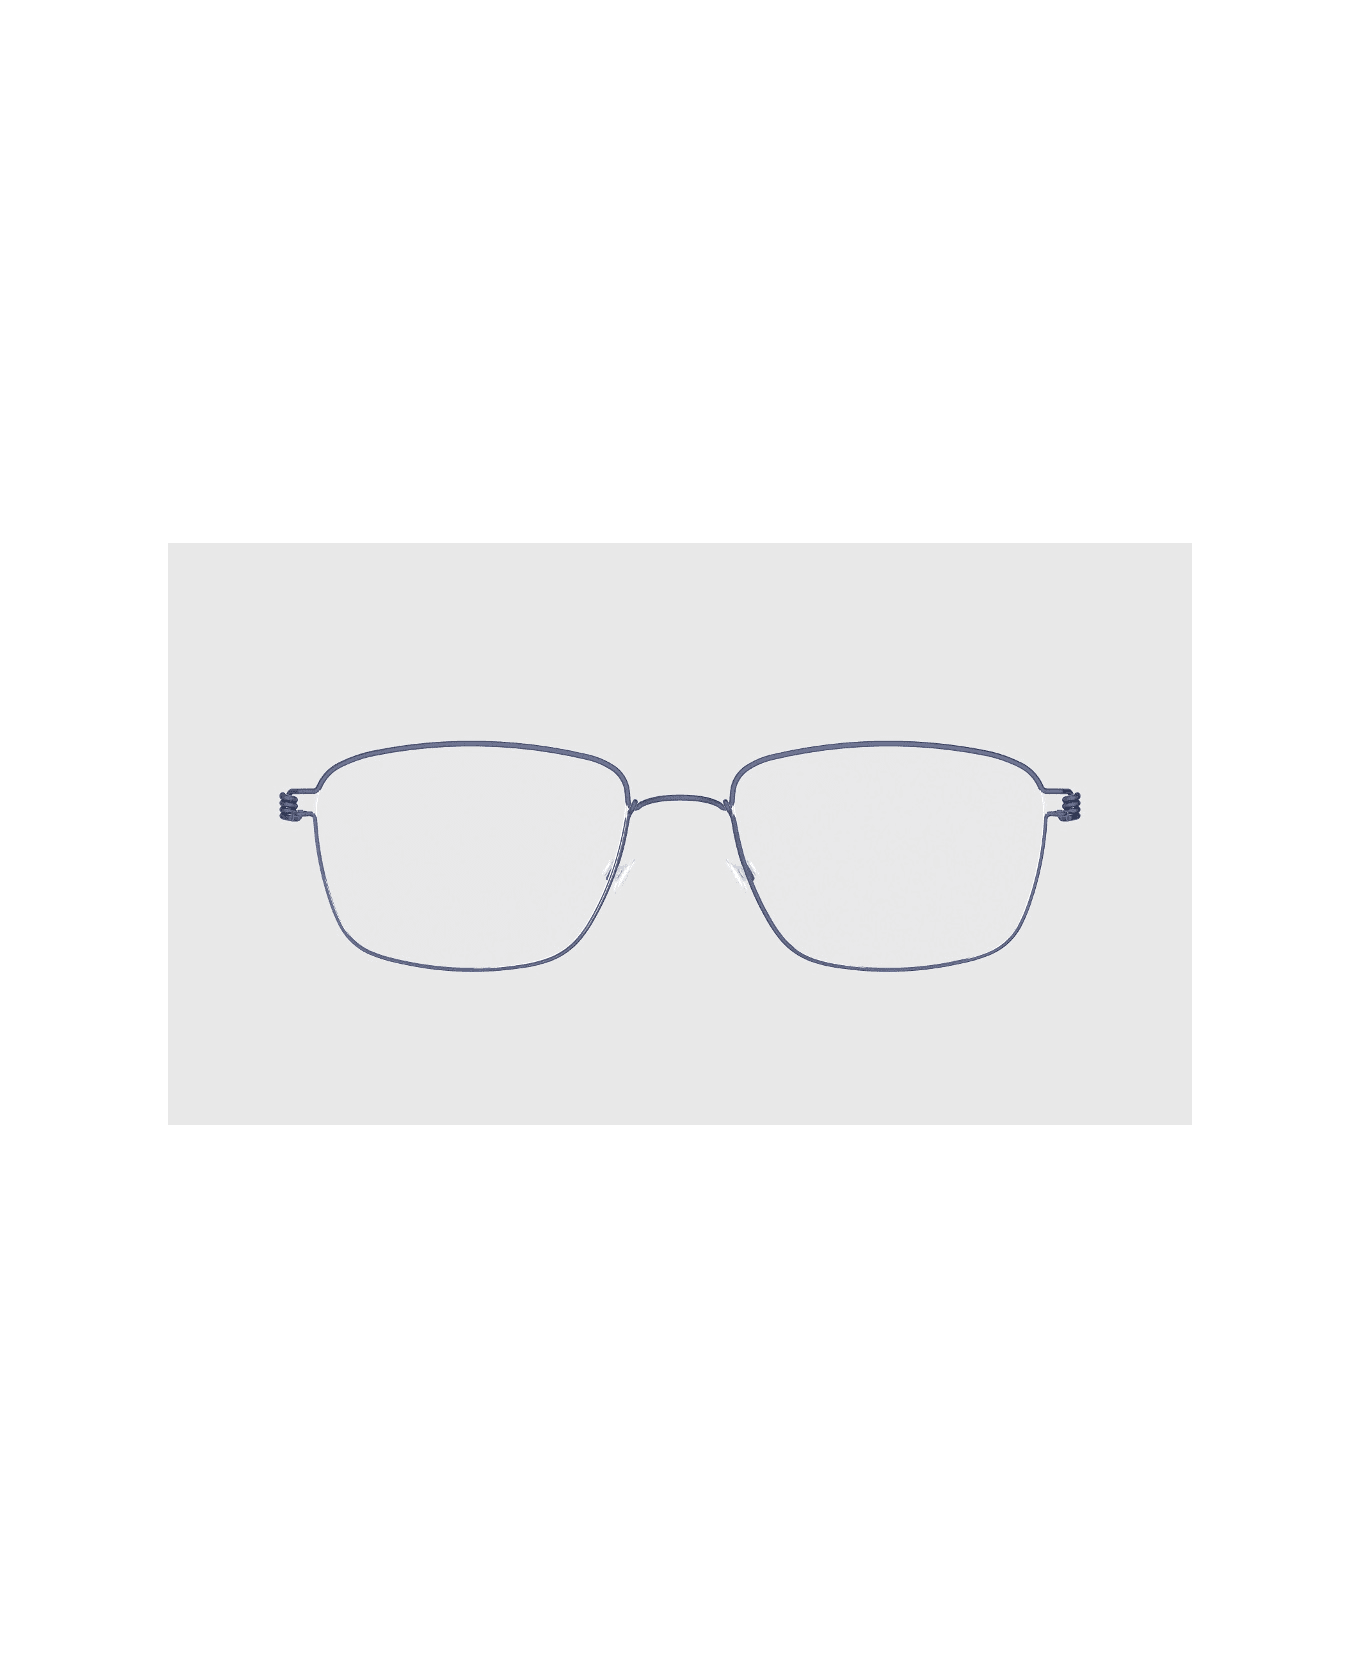 LINDBERG Nicholas U13 Glasses - Blu アイウェア